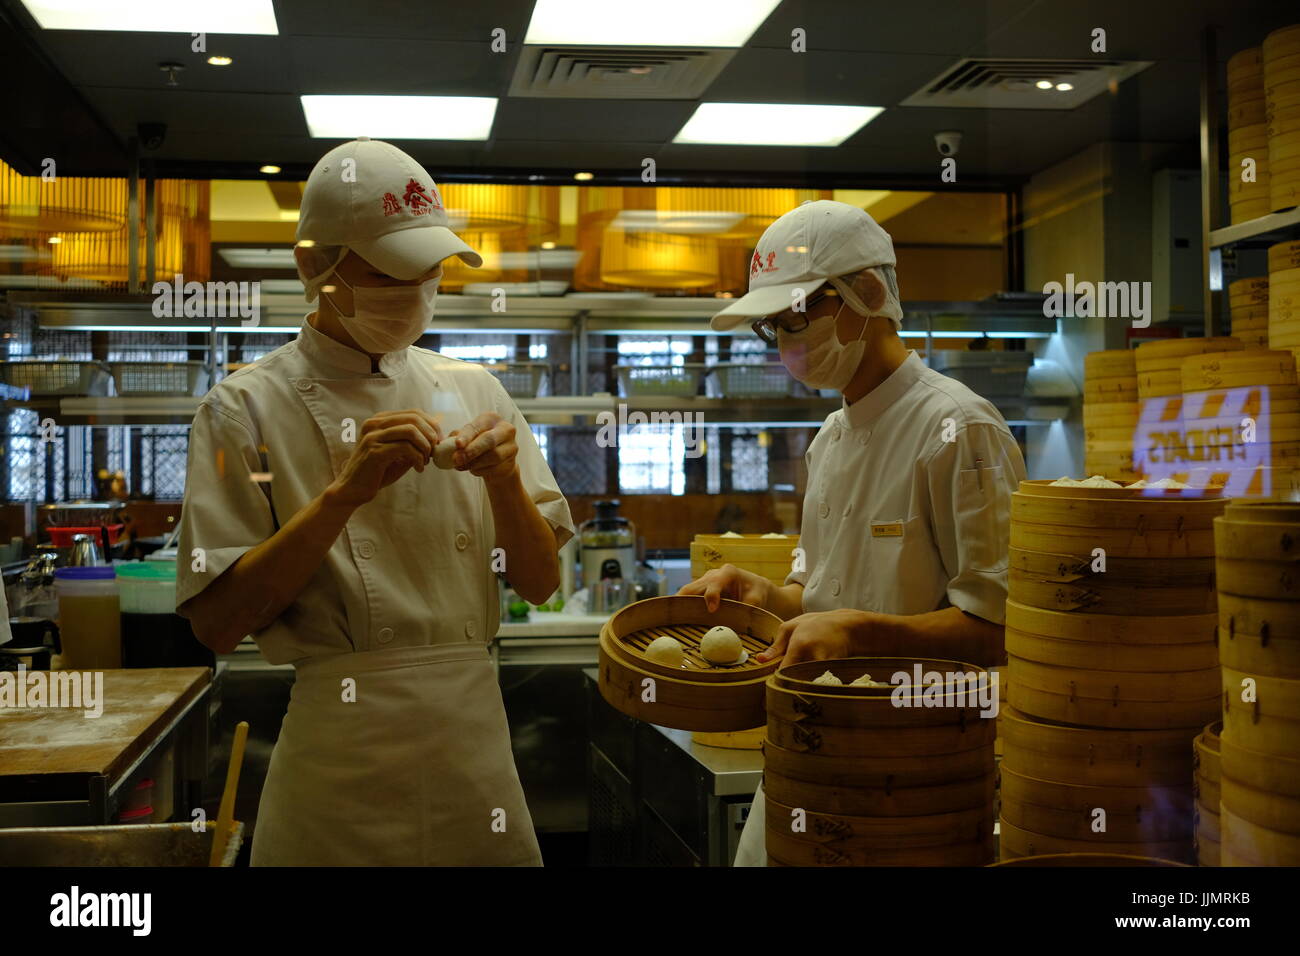 La préparation des Dim Sum dans un restaurant malaisien Chines, les boulettes sont fraîchement préparés et cuisinés à la demande. Banque D'Images